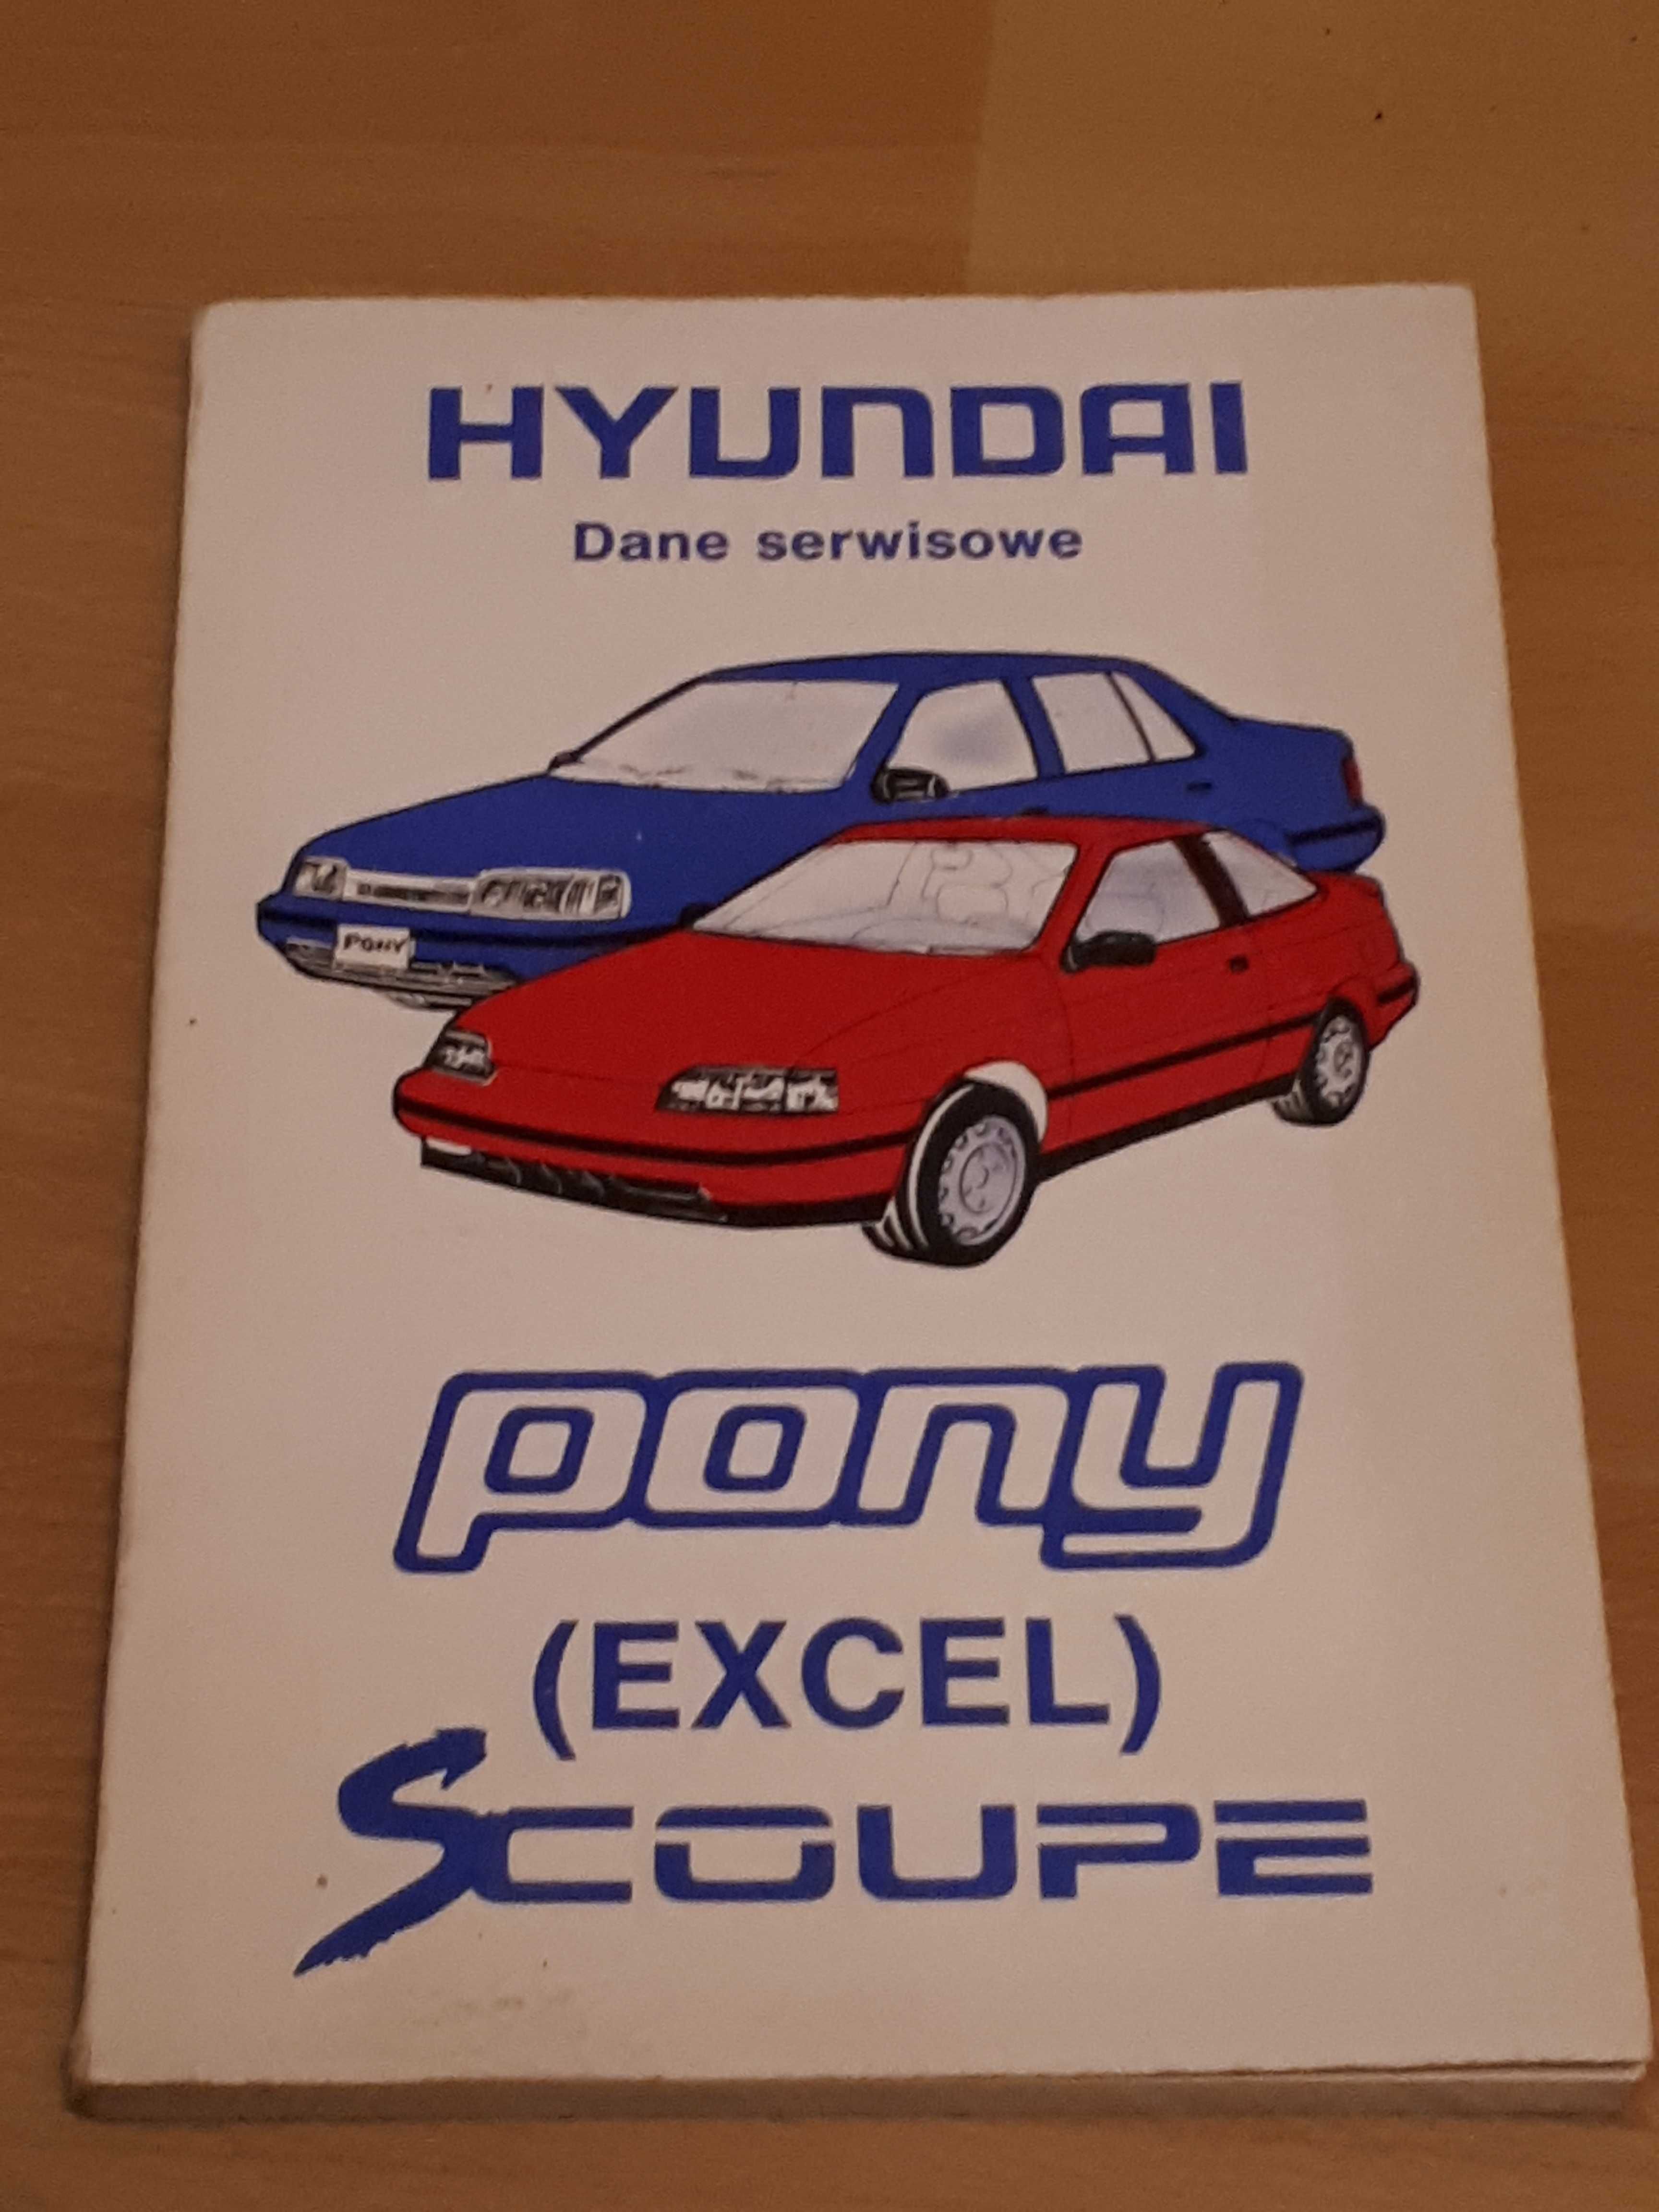 Hyundai Pony Excel Scoupe dane serwisowe nakład 500 egz.